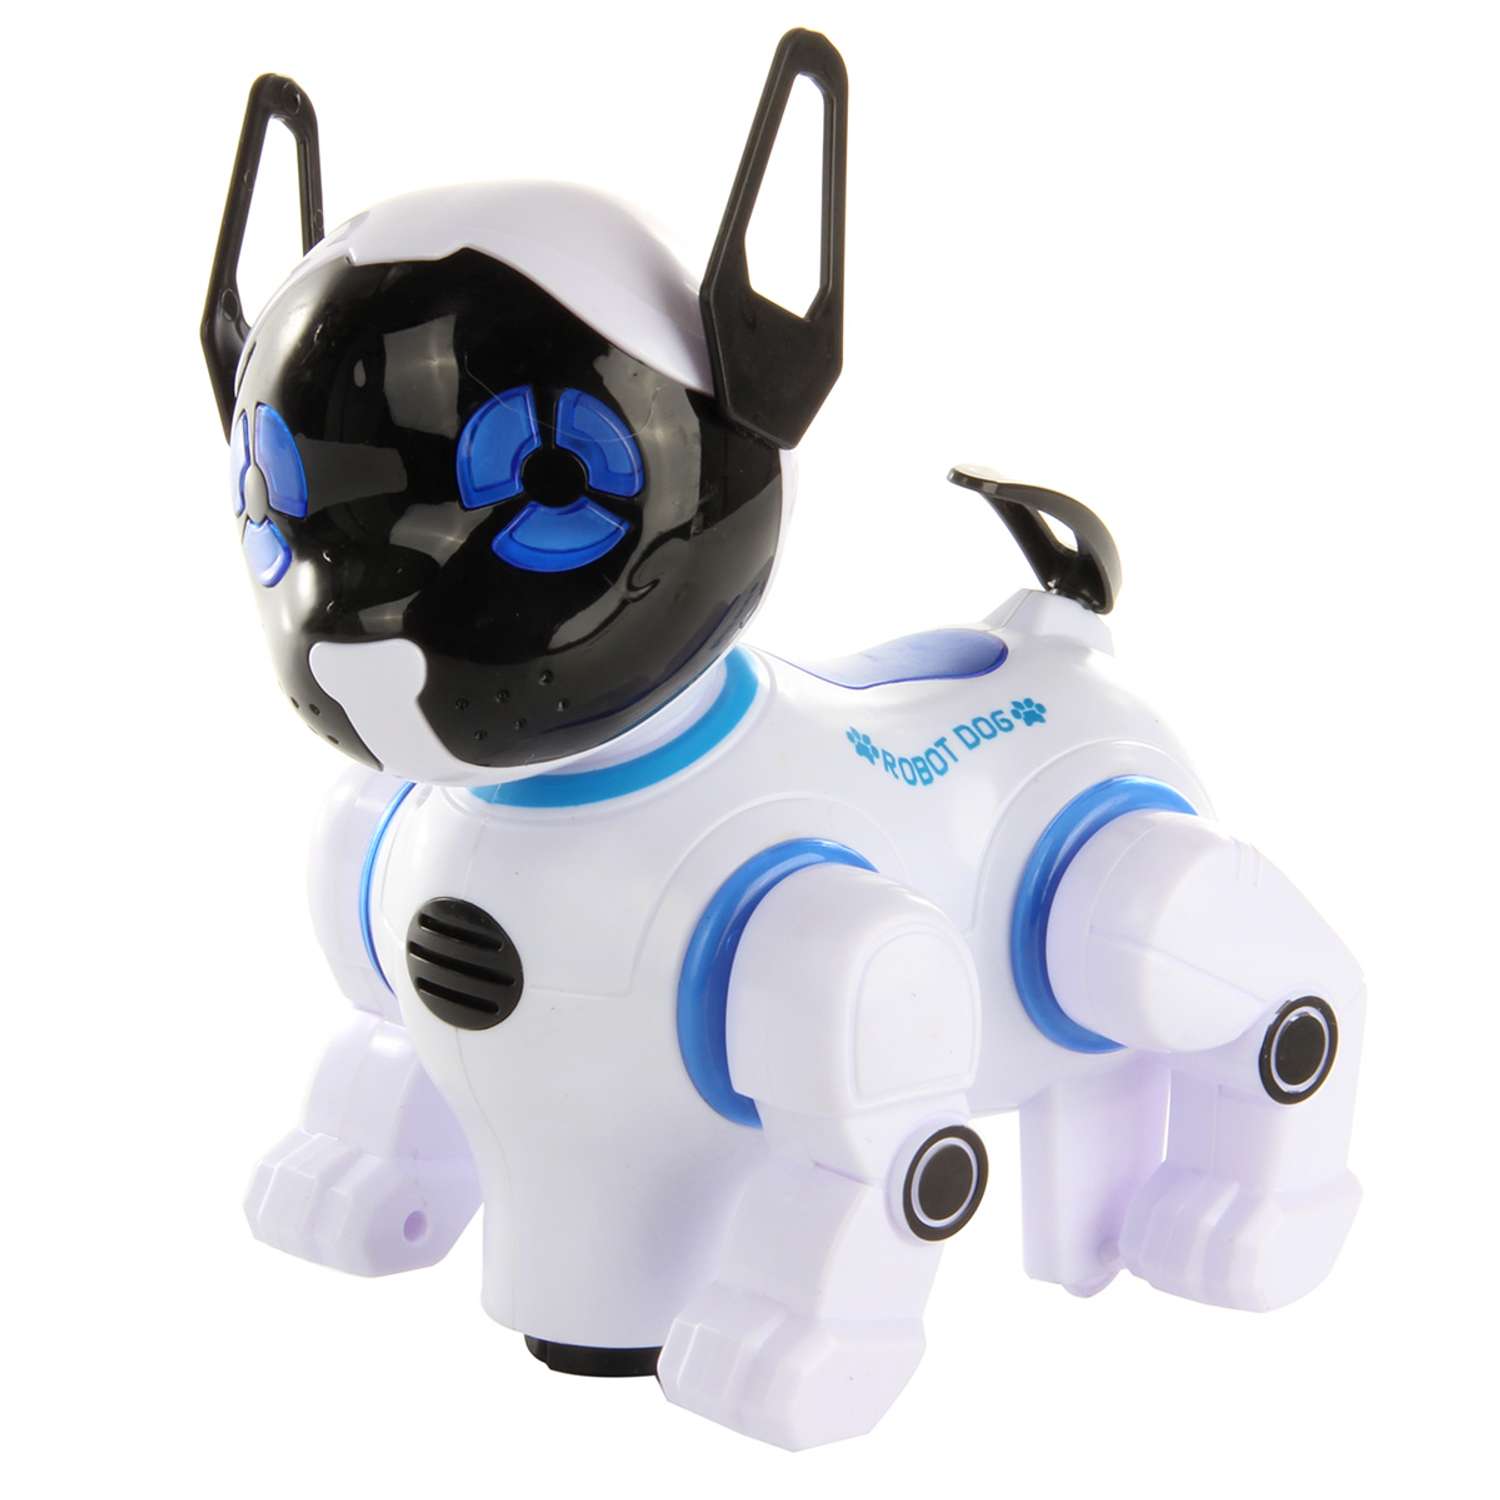 Итеративная собака Veld Co собака робот - фото 1